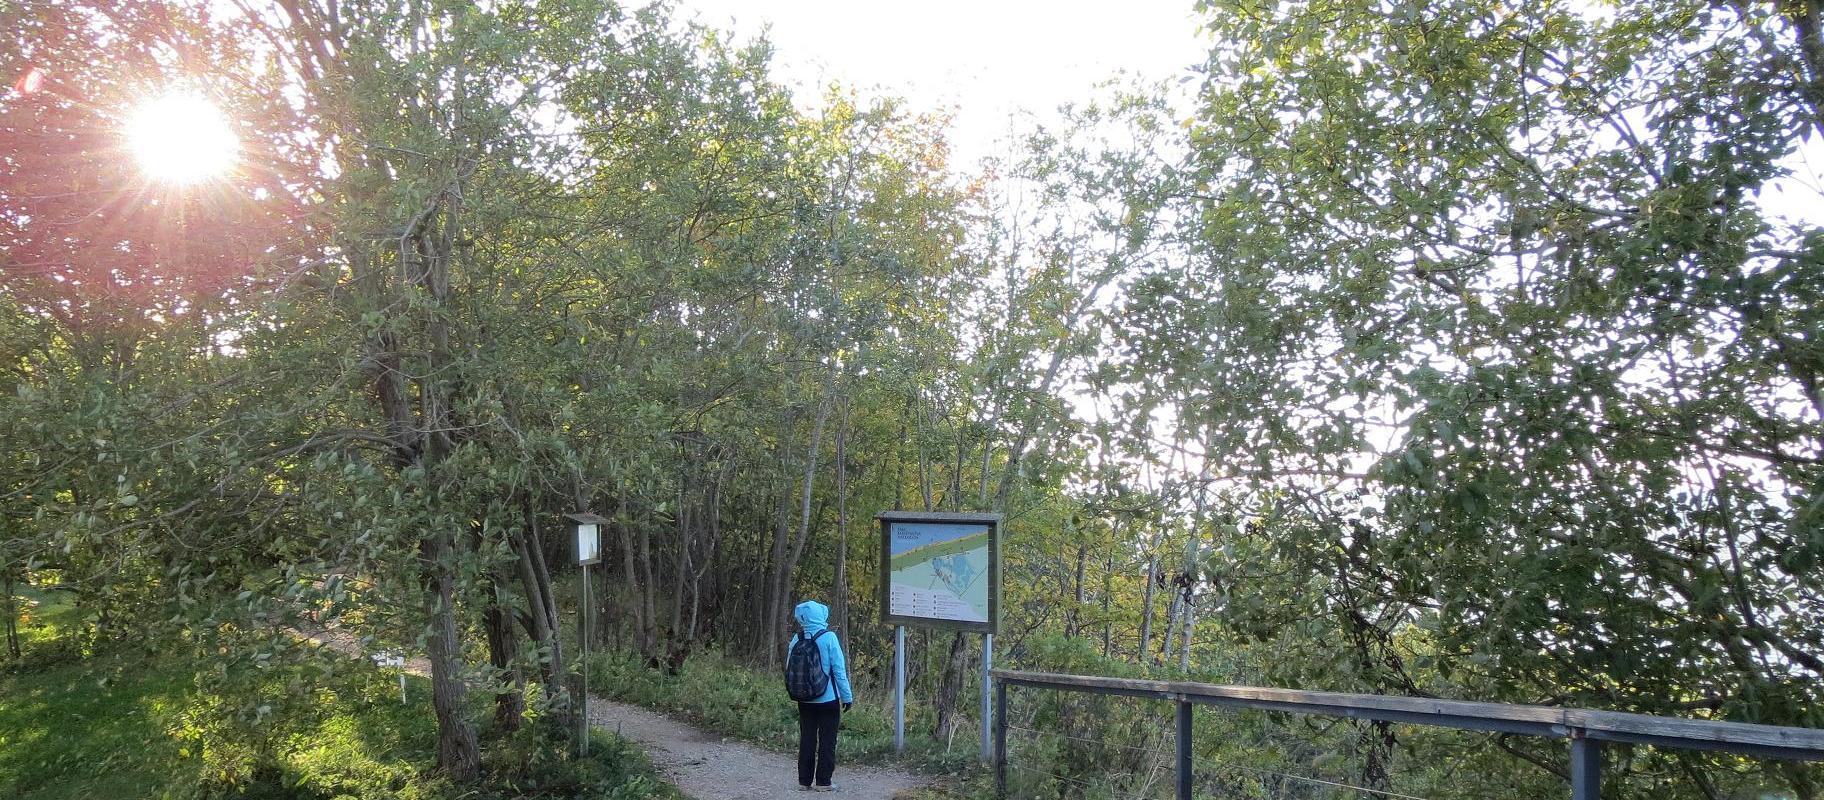 Saka Klindimõisa hiking trail